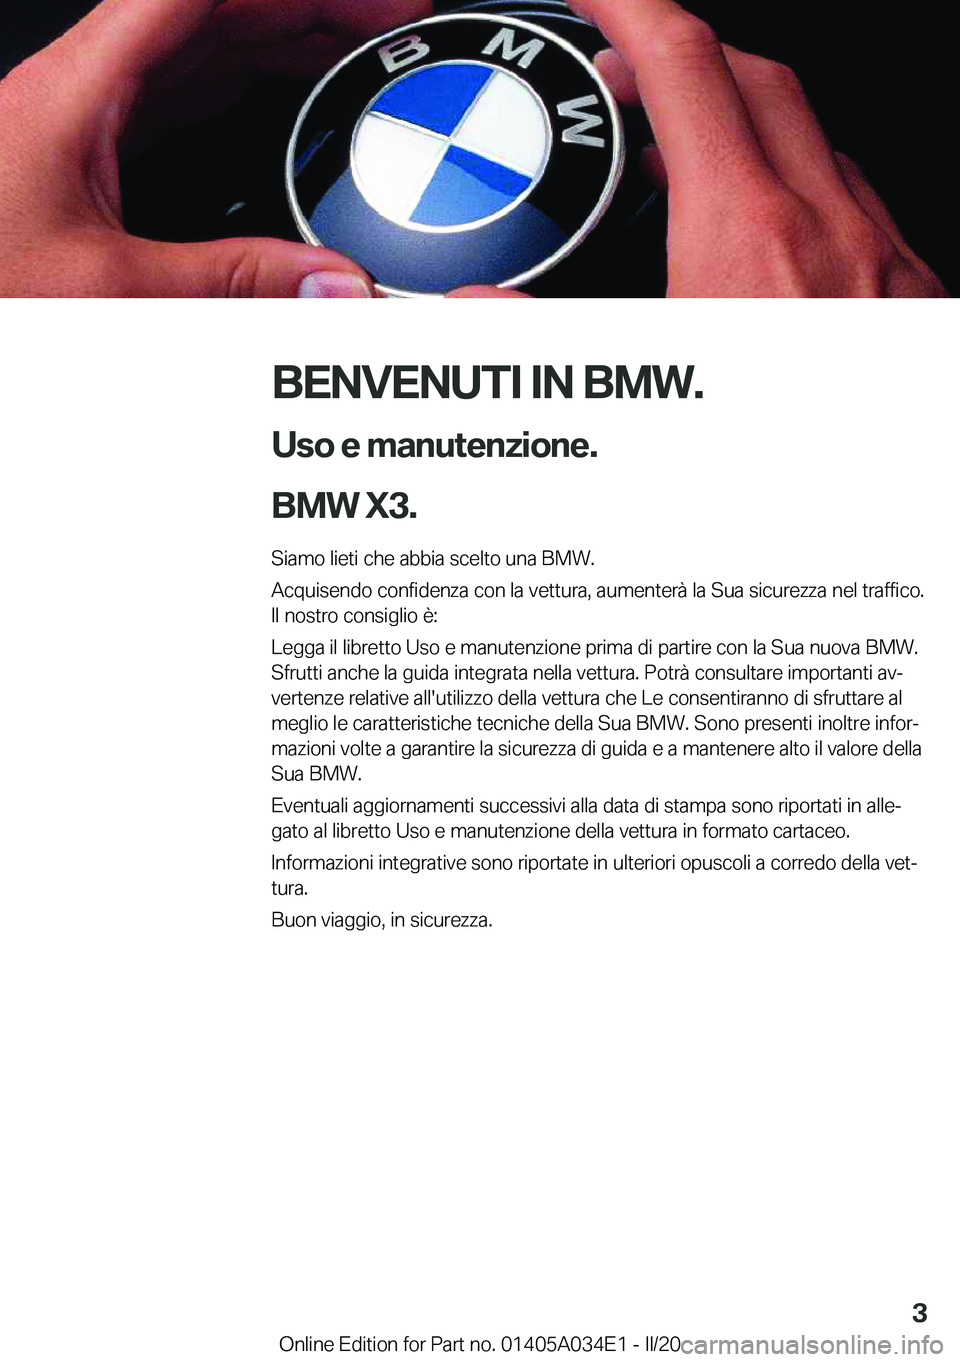 BMW X3 2020  Libretti Di Uso E manutenzione (in Italian) �B�E�N�V�E�N�U�T�I��I�N��B�M�W�.�U�s�o��e��m�a�n�u�t�e�n�z�i�o�n�e�.
�B�M�W��X�3�.
�S�i�a�m�o��l�i�e�t�i��c�h�e��a�b�b�i�a��s�c�e�l�t�o��u�n�a��B�M�W�.
�A�c�q�u�i�s�e�n�d�o��c�o�n�f�i�d�e�